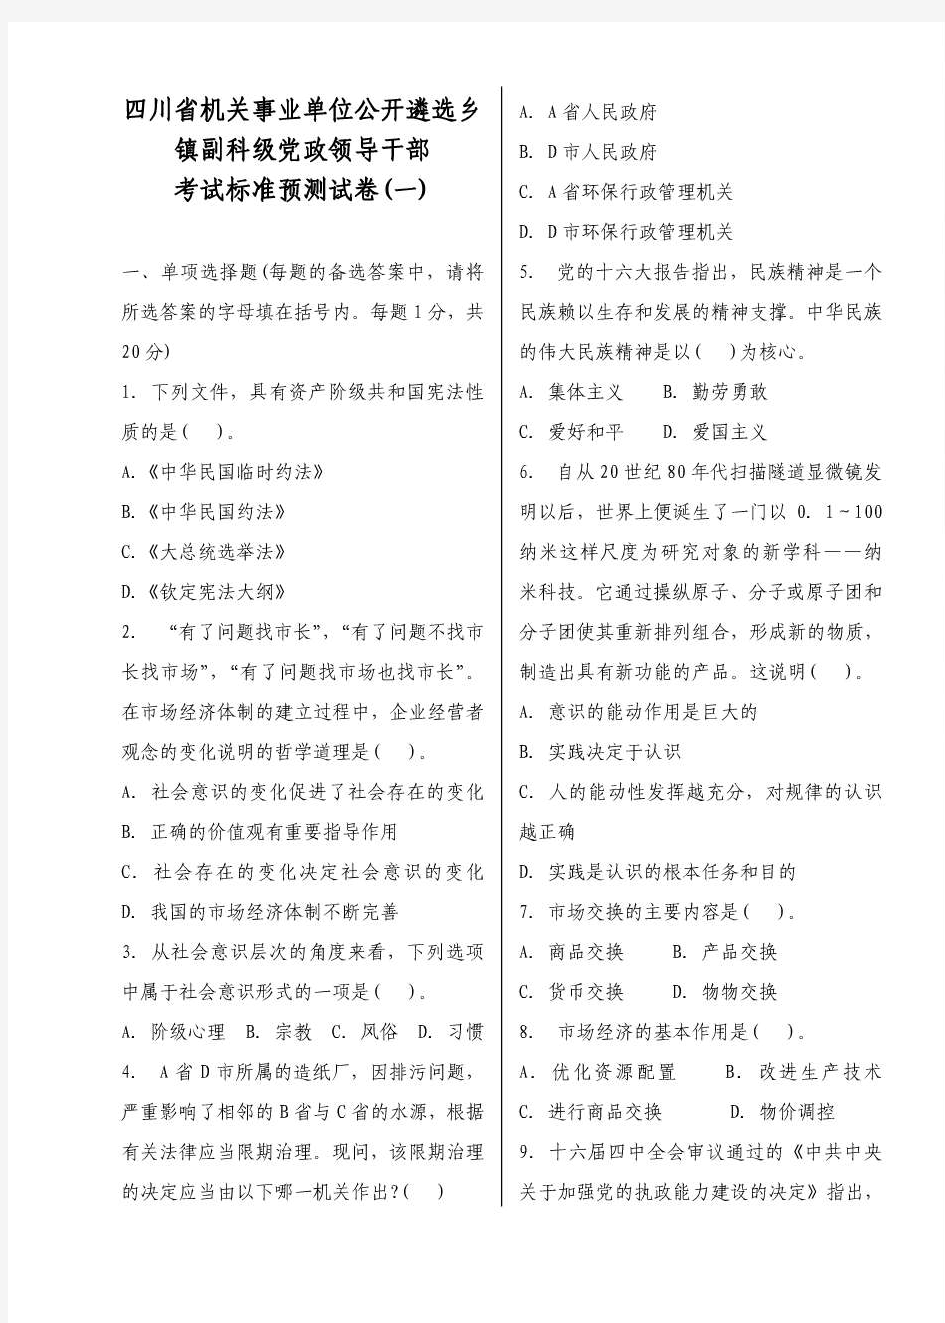 四川省公开选拨副科级干部考试试题